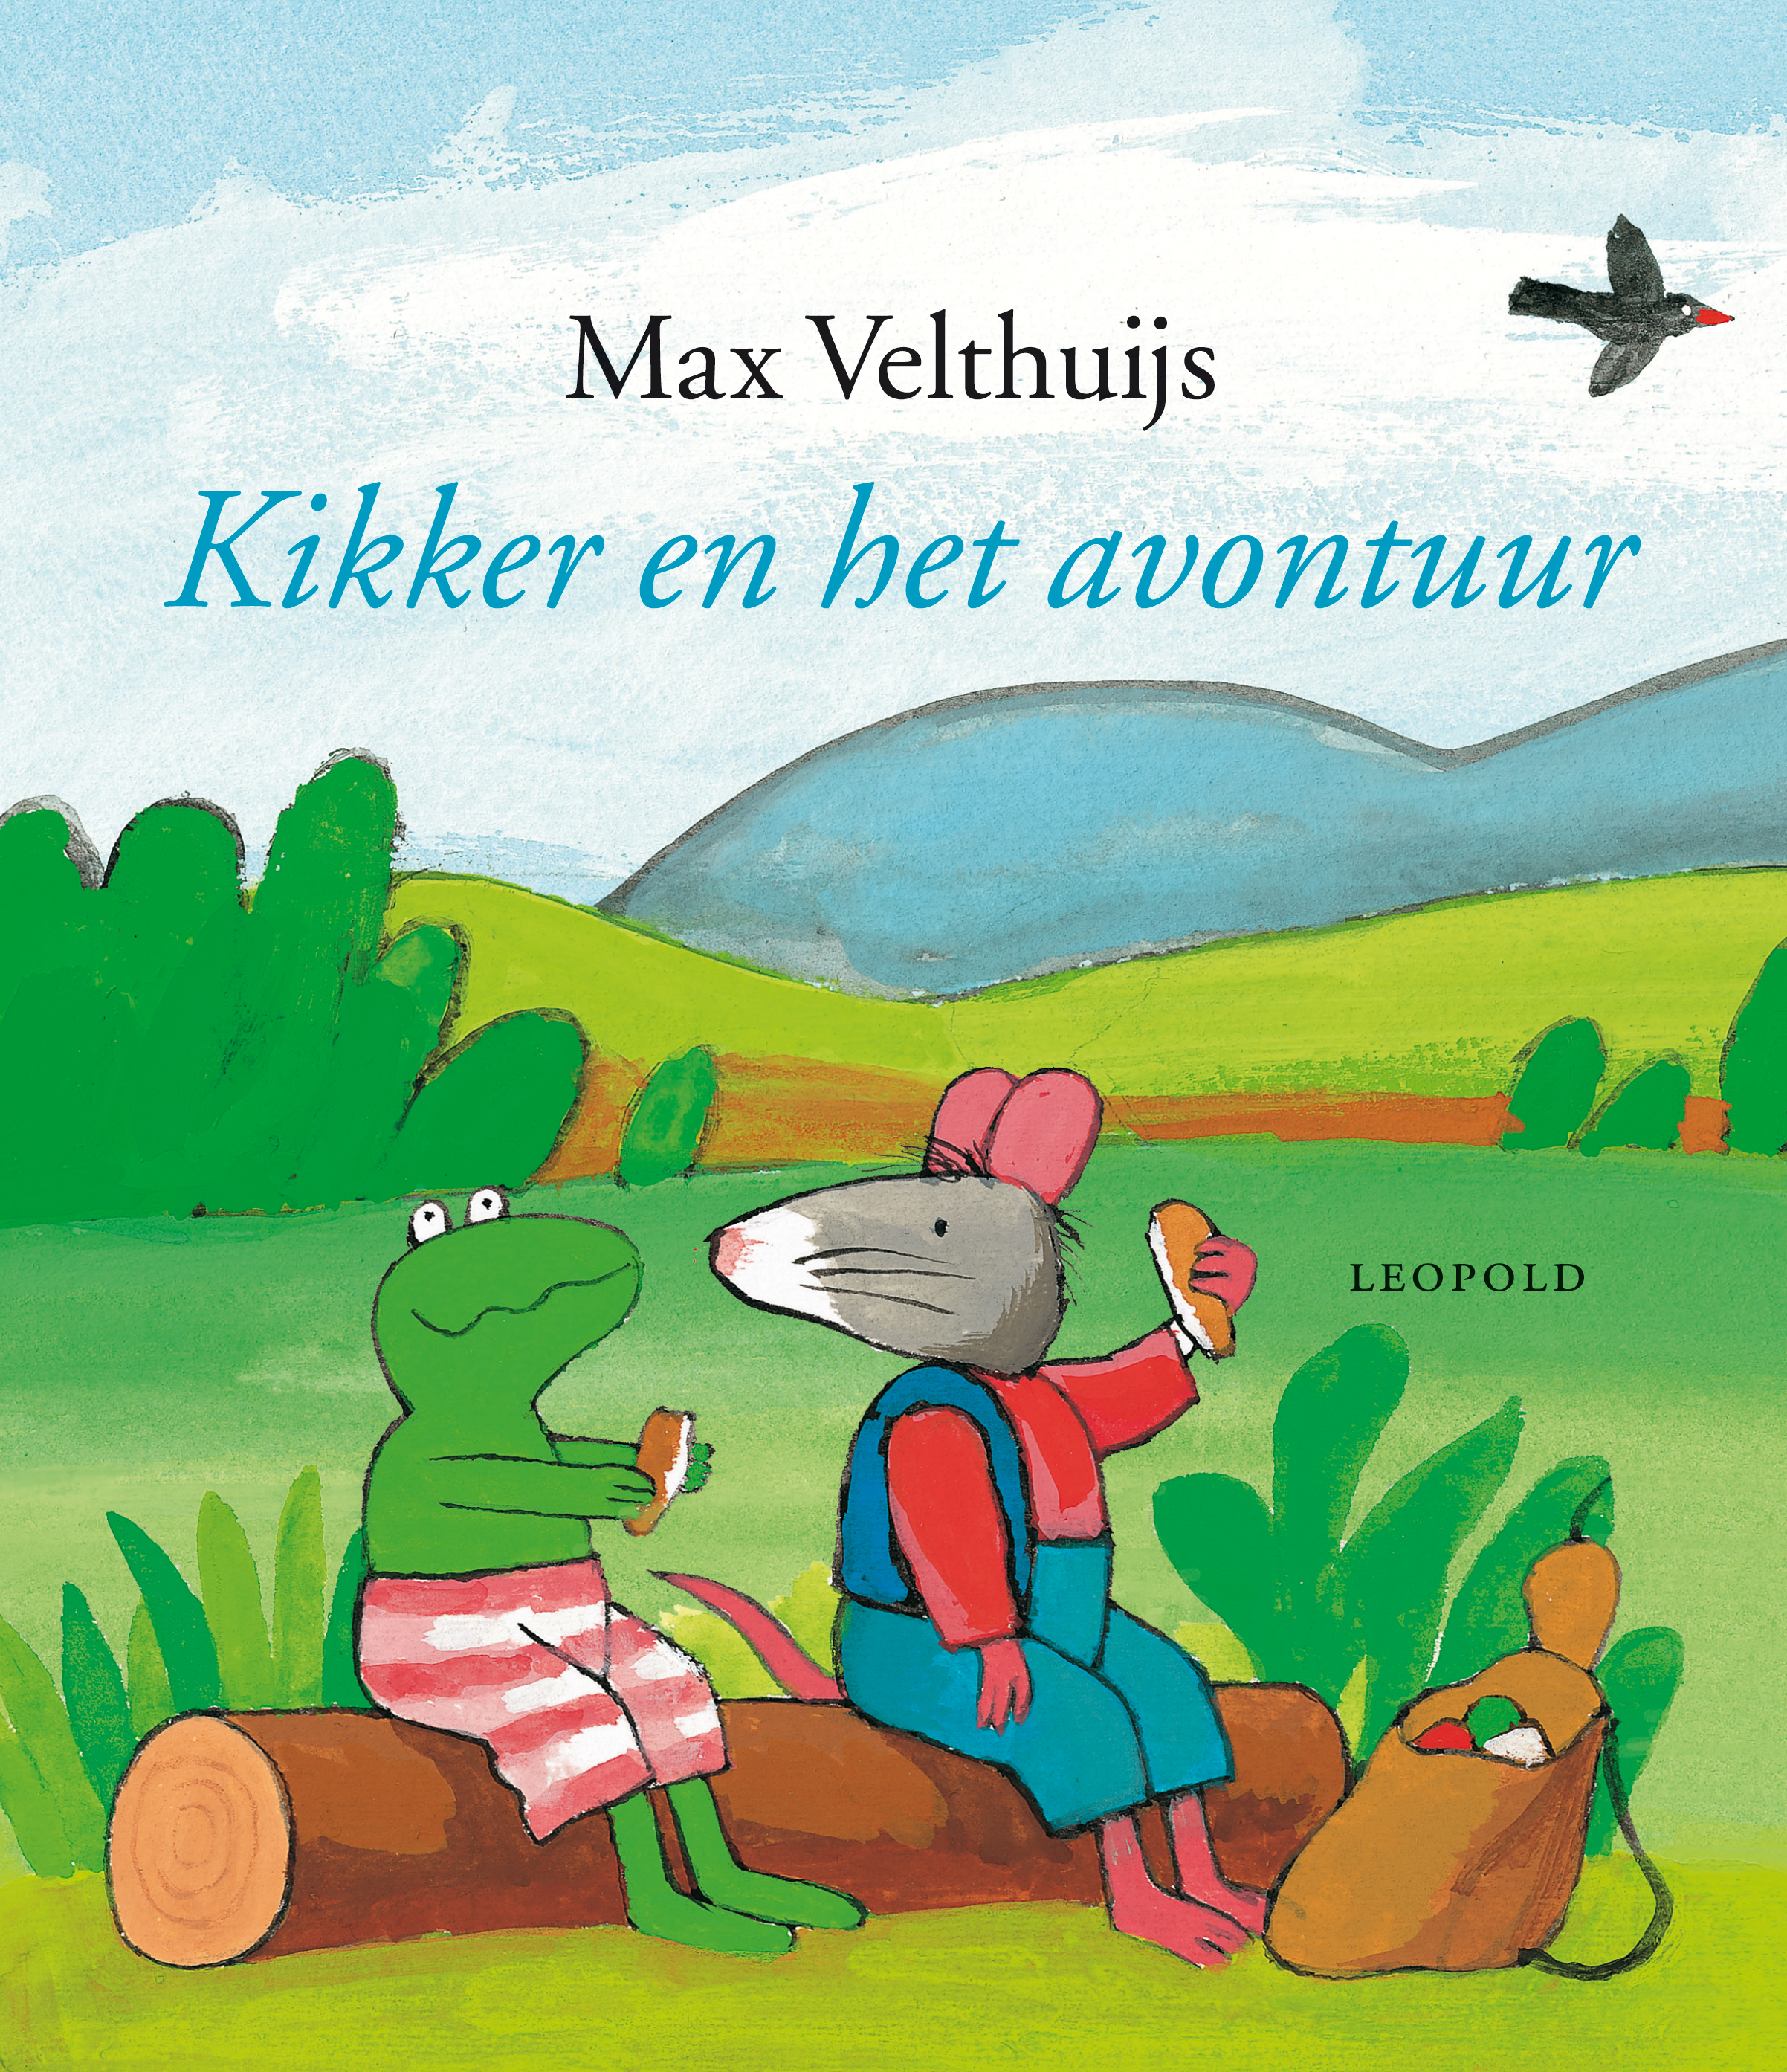 Kikker het avontuur - Max Velthuijs - Kinderboeken.nl